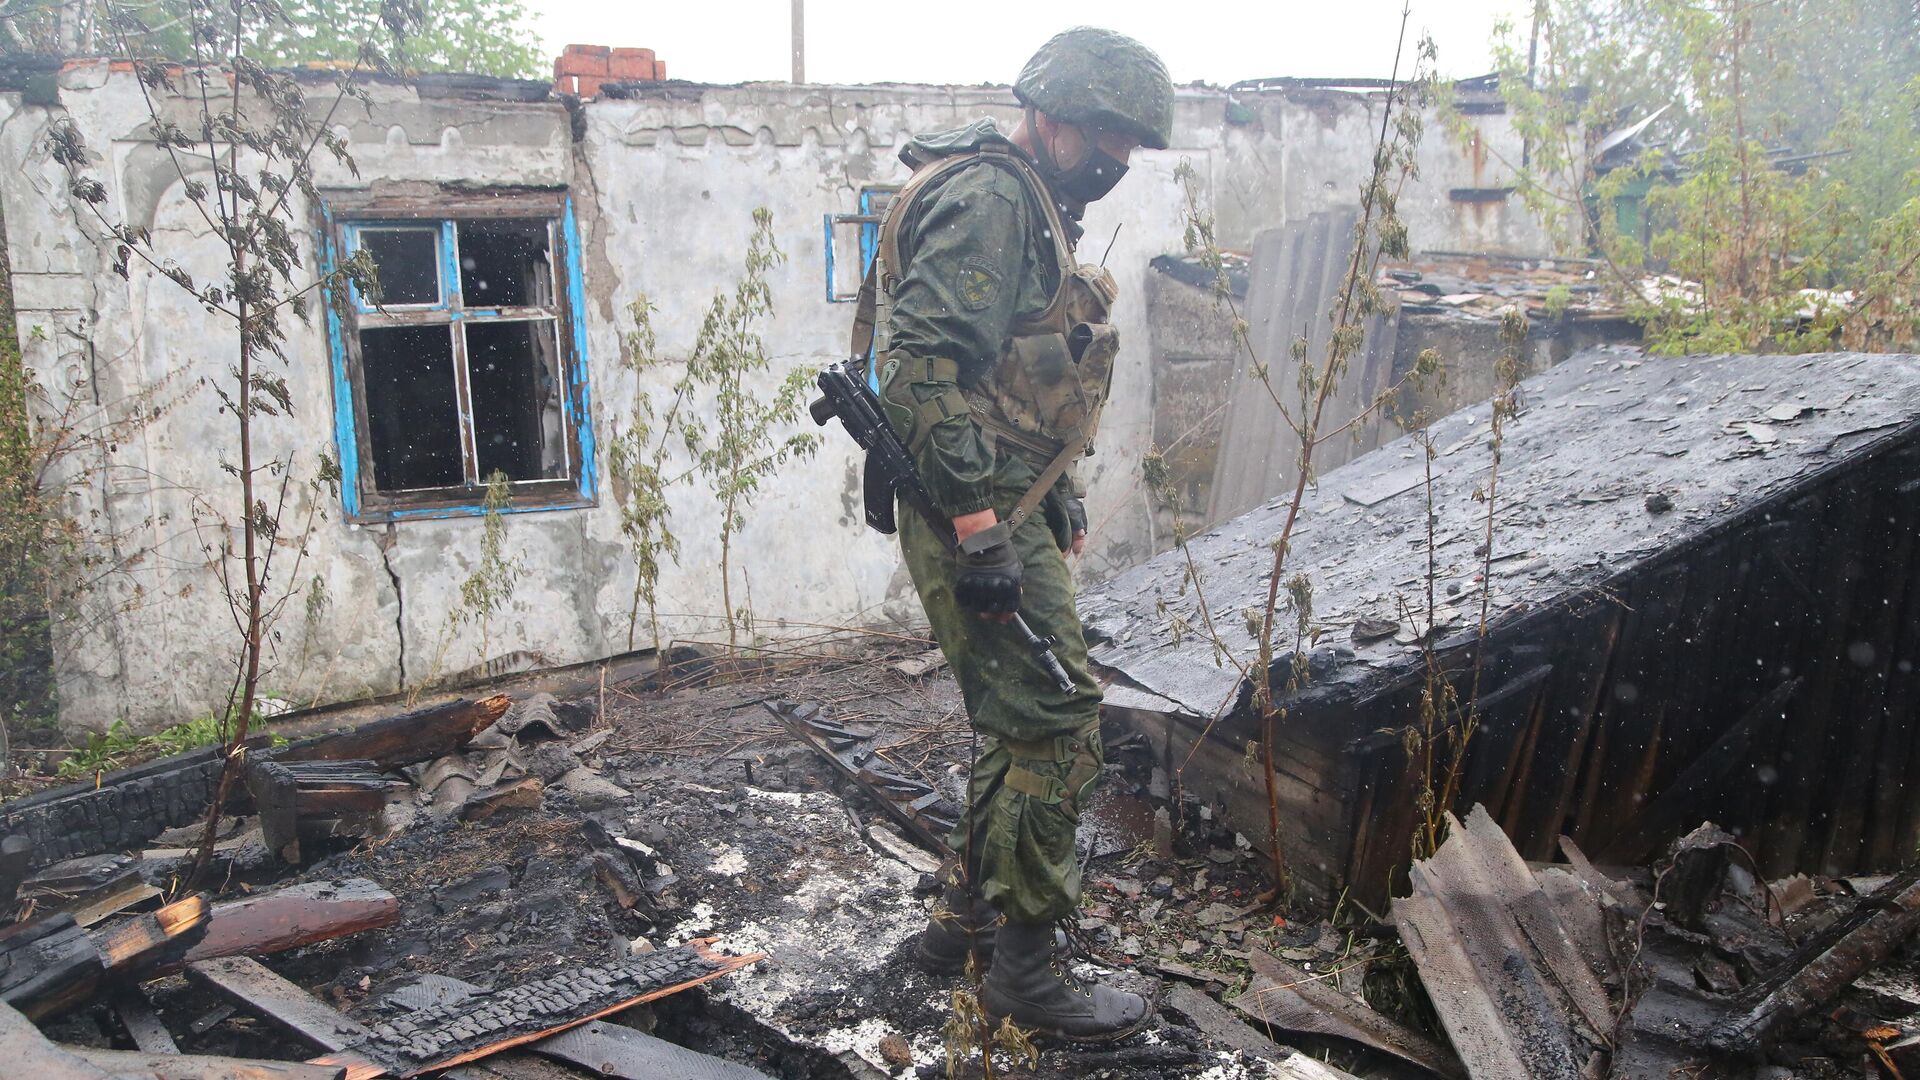 ВСУ разместили технику в жилом районе в Донбассе, заявили в ЛНР